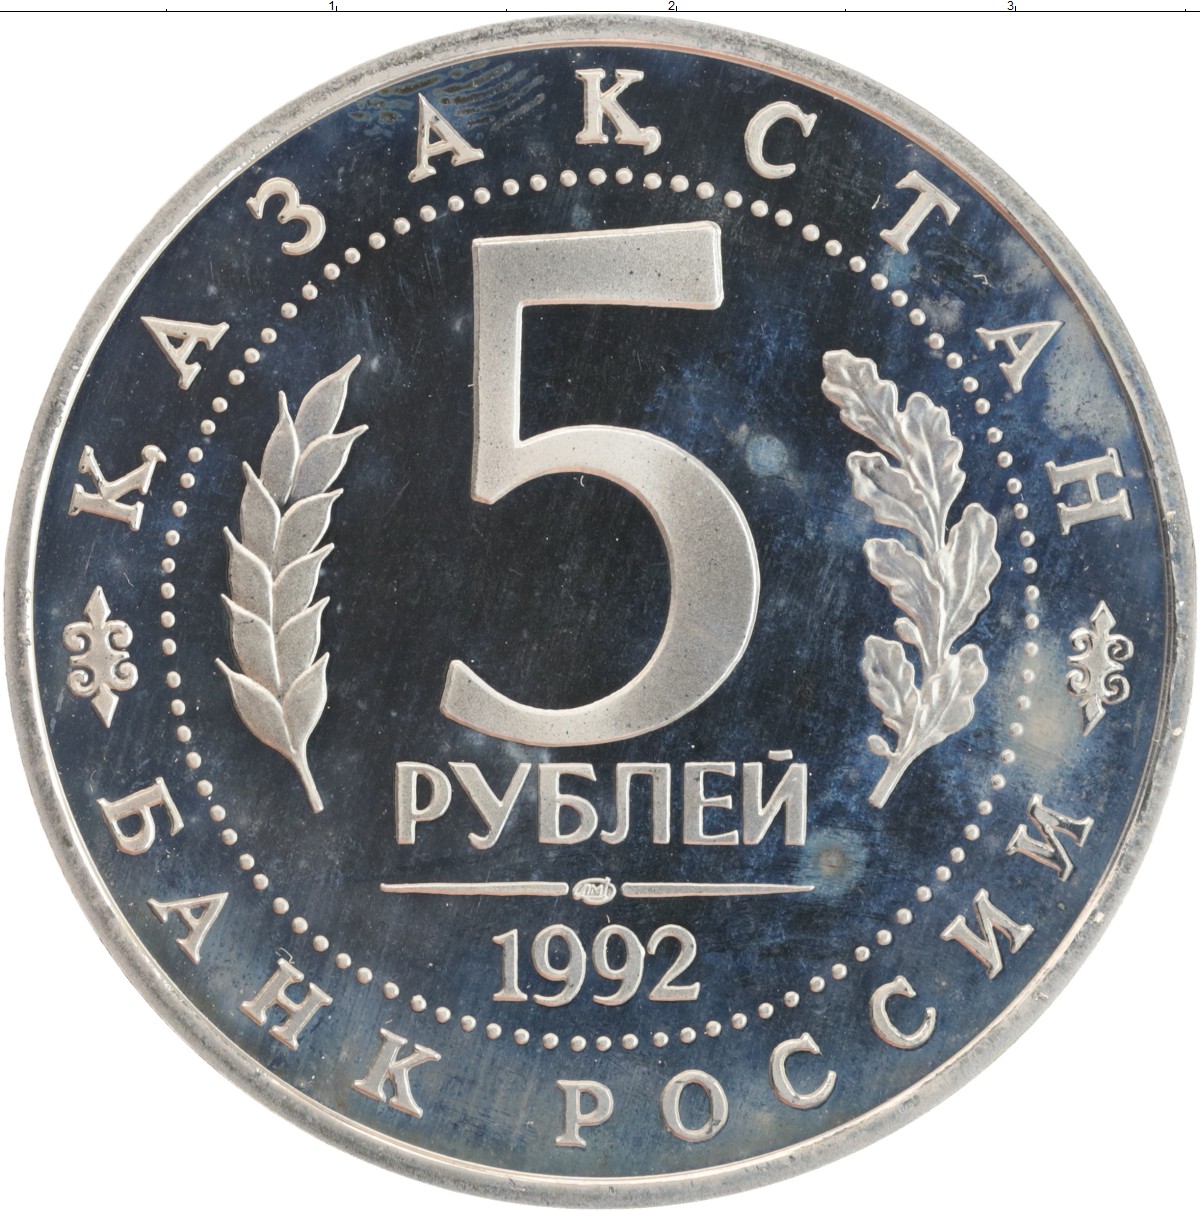 5 рублей медные. Монета 5 рублей медная 2016. Рубли Руси 1994-1997. 1992 Цифры.